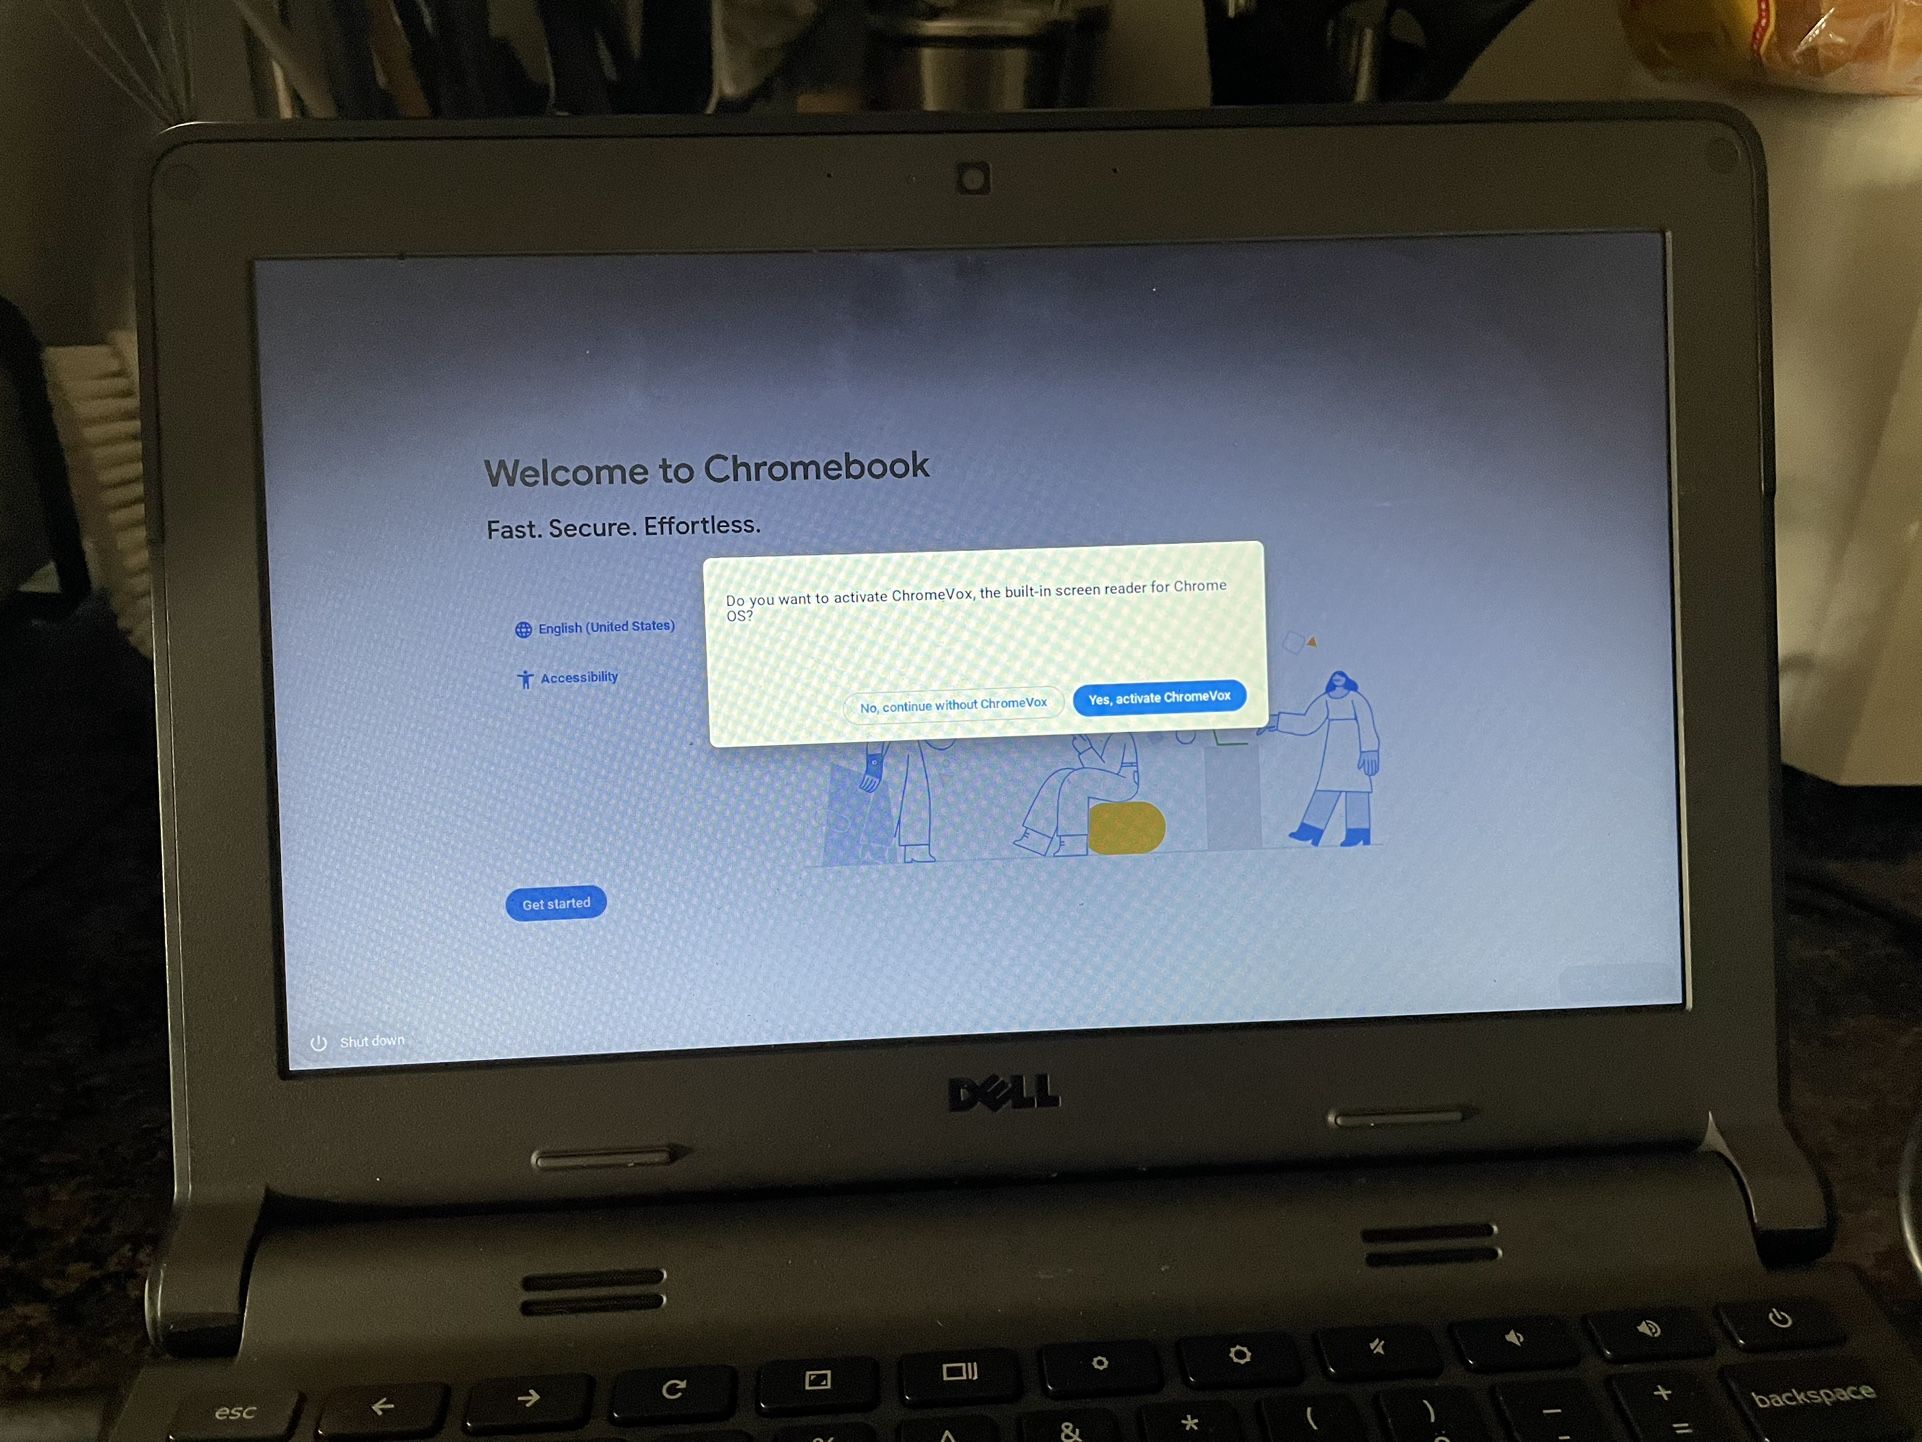 Dell Chromebook 3120 11.6" 11 Laptop Intel Celeron N2840 2.16GH 16GB SSD 4GB RAM